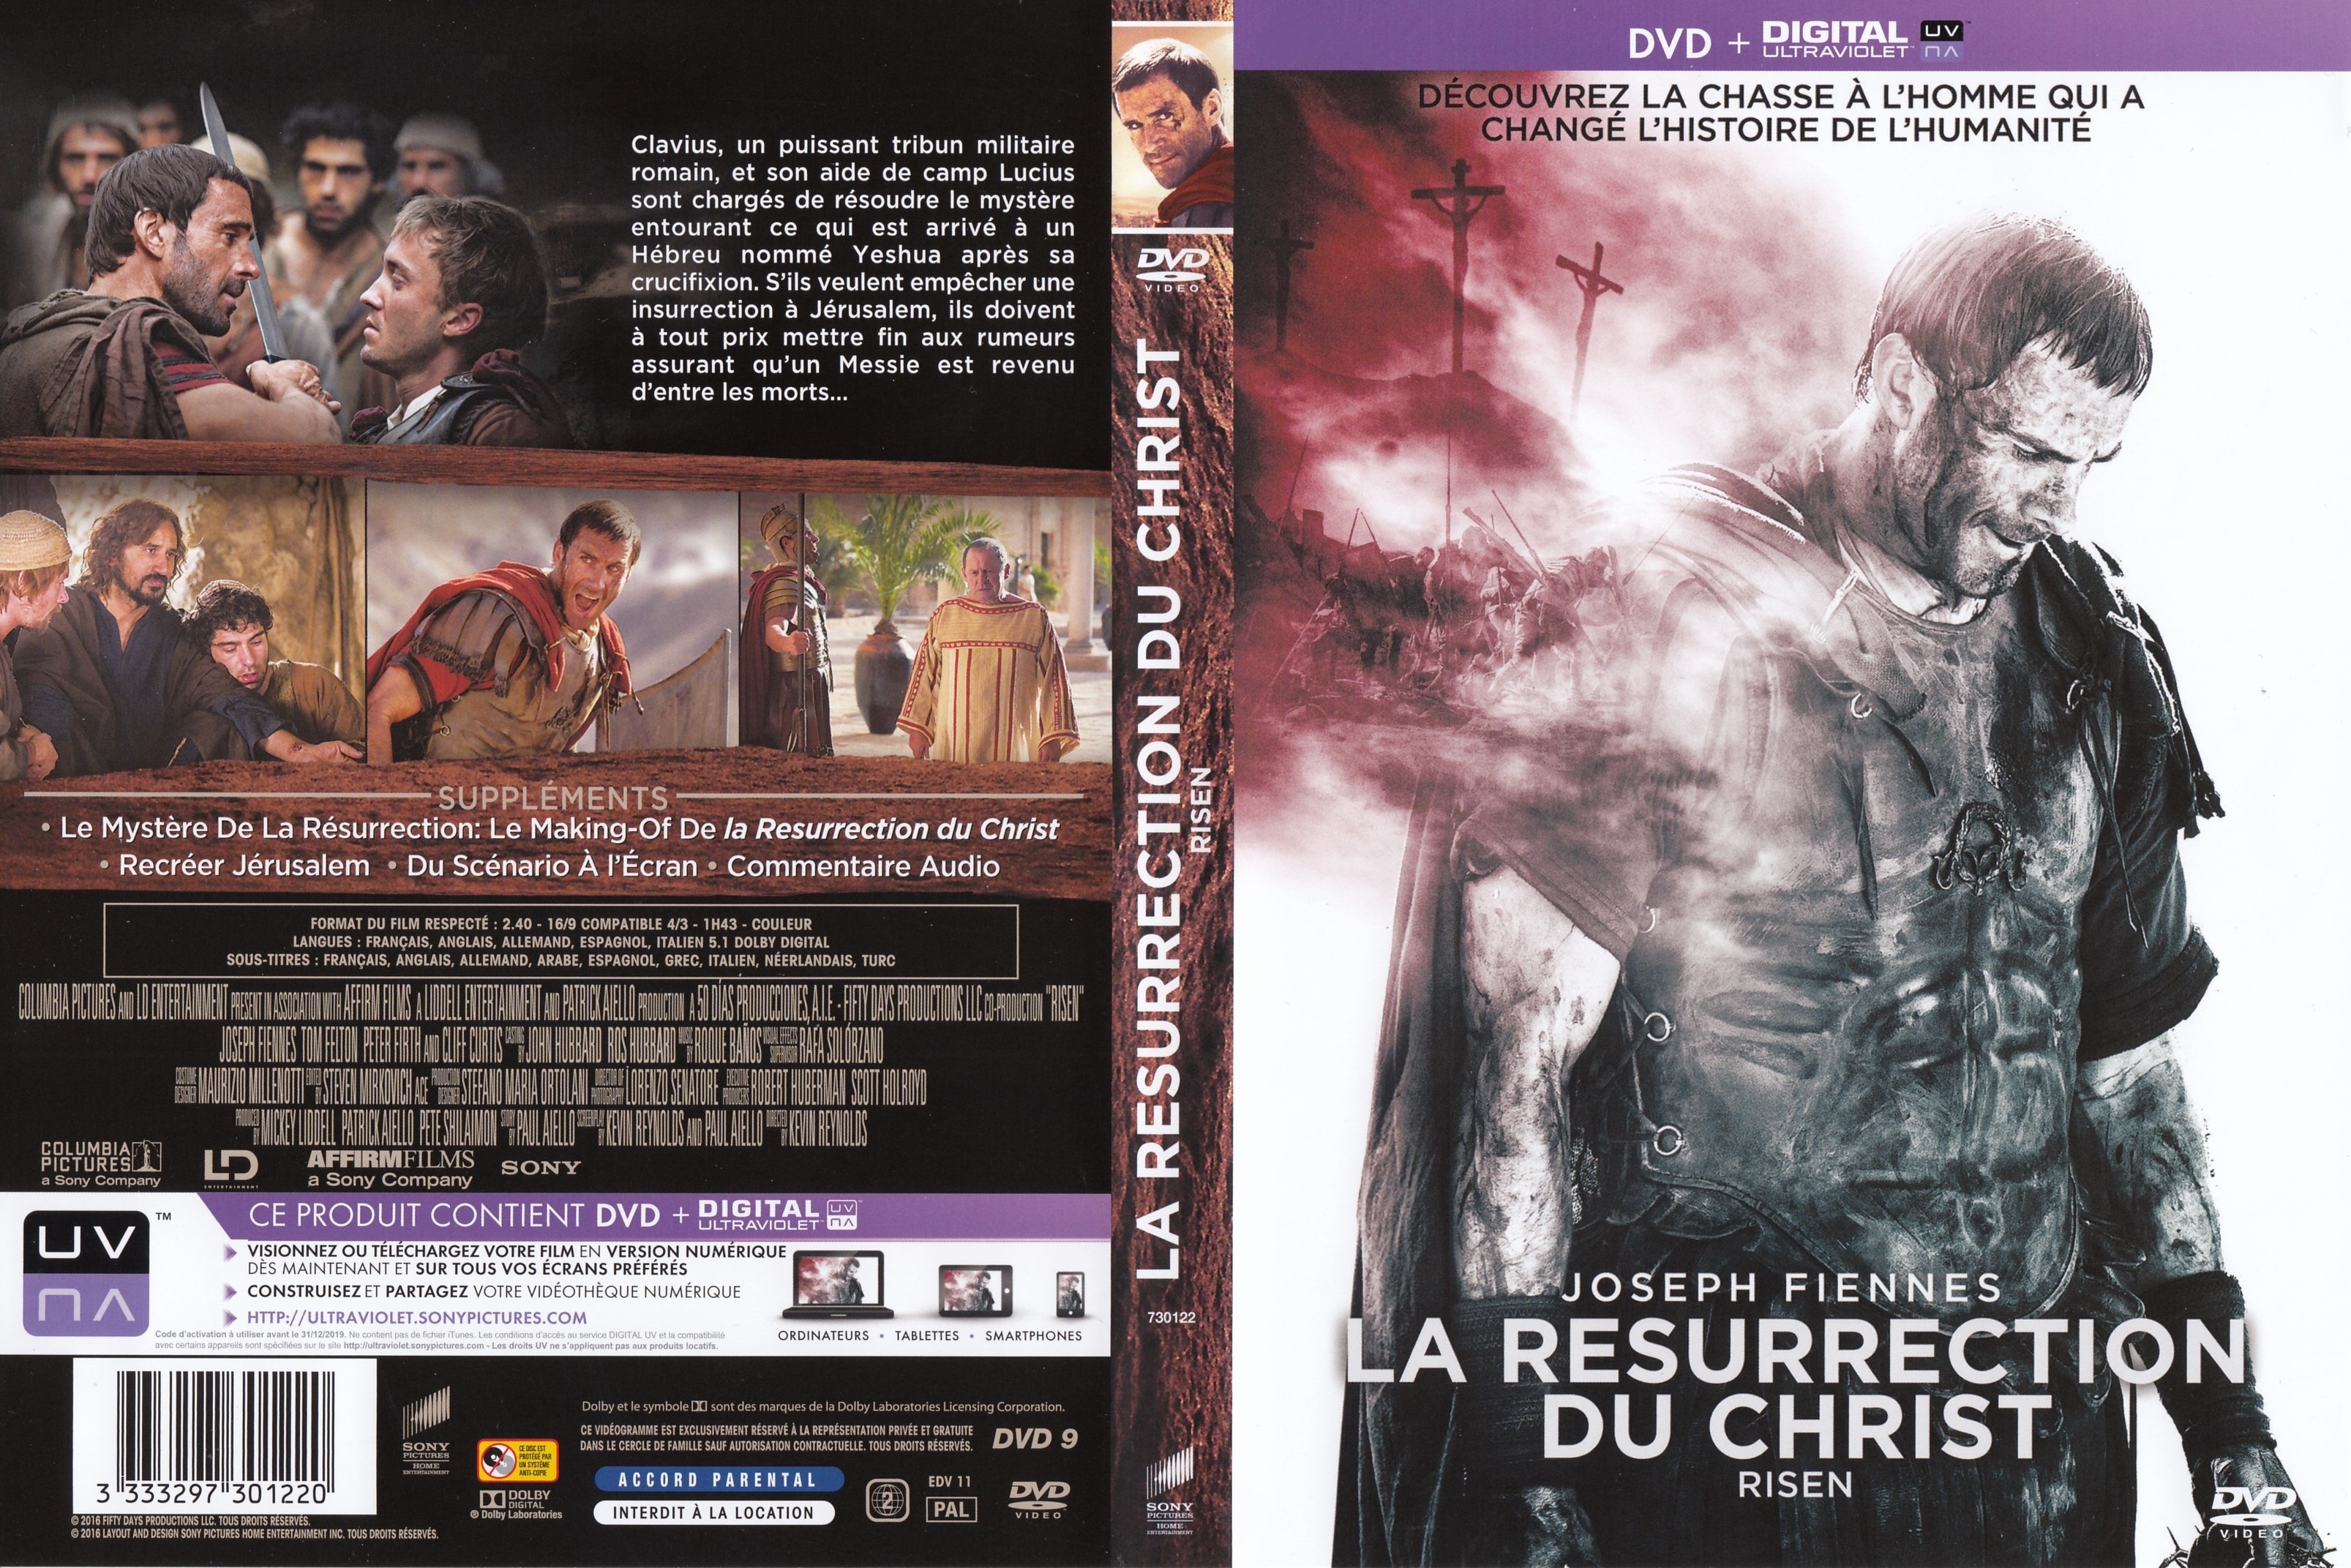 Jaquette DVD La rsurection du christ